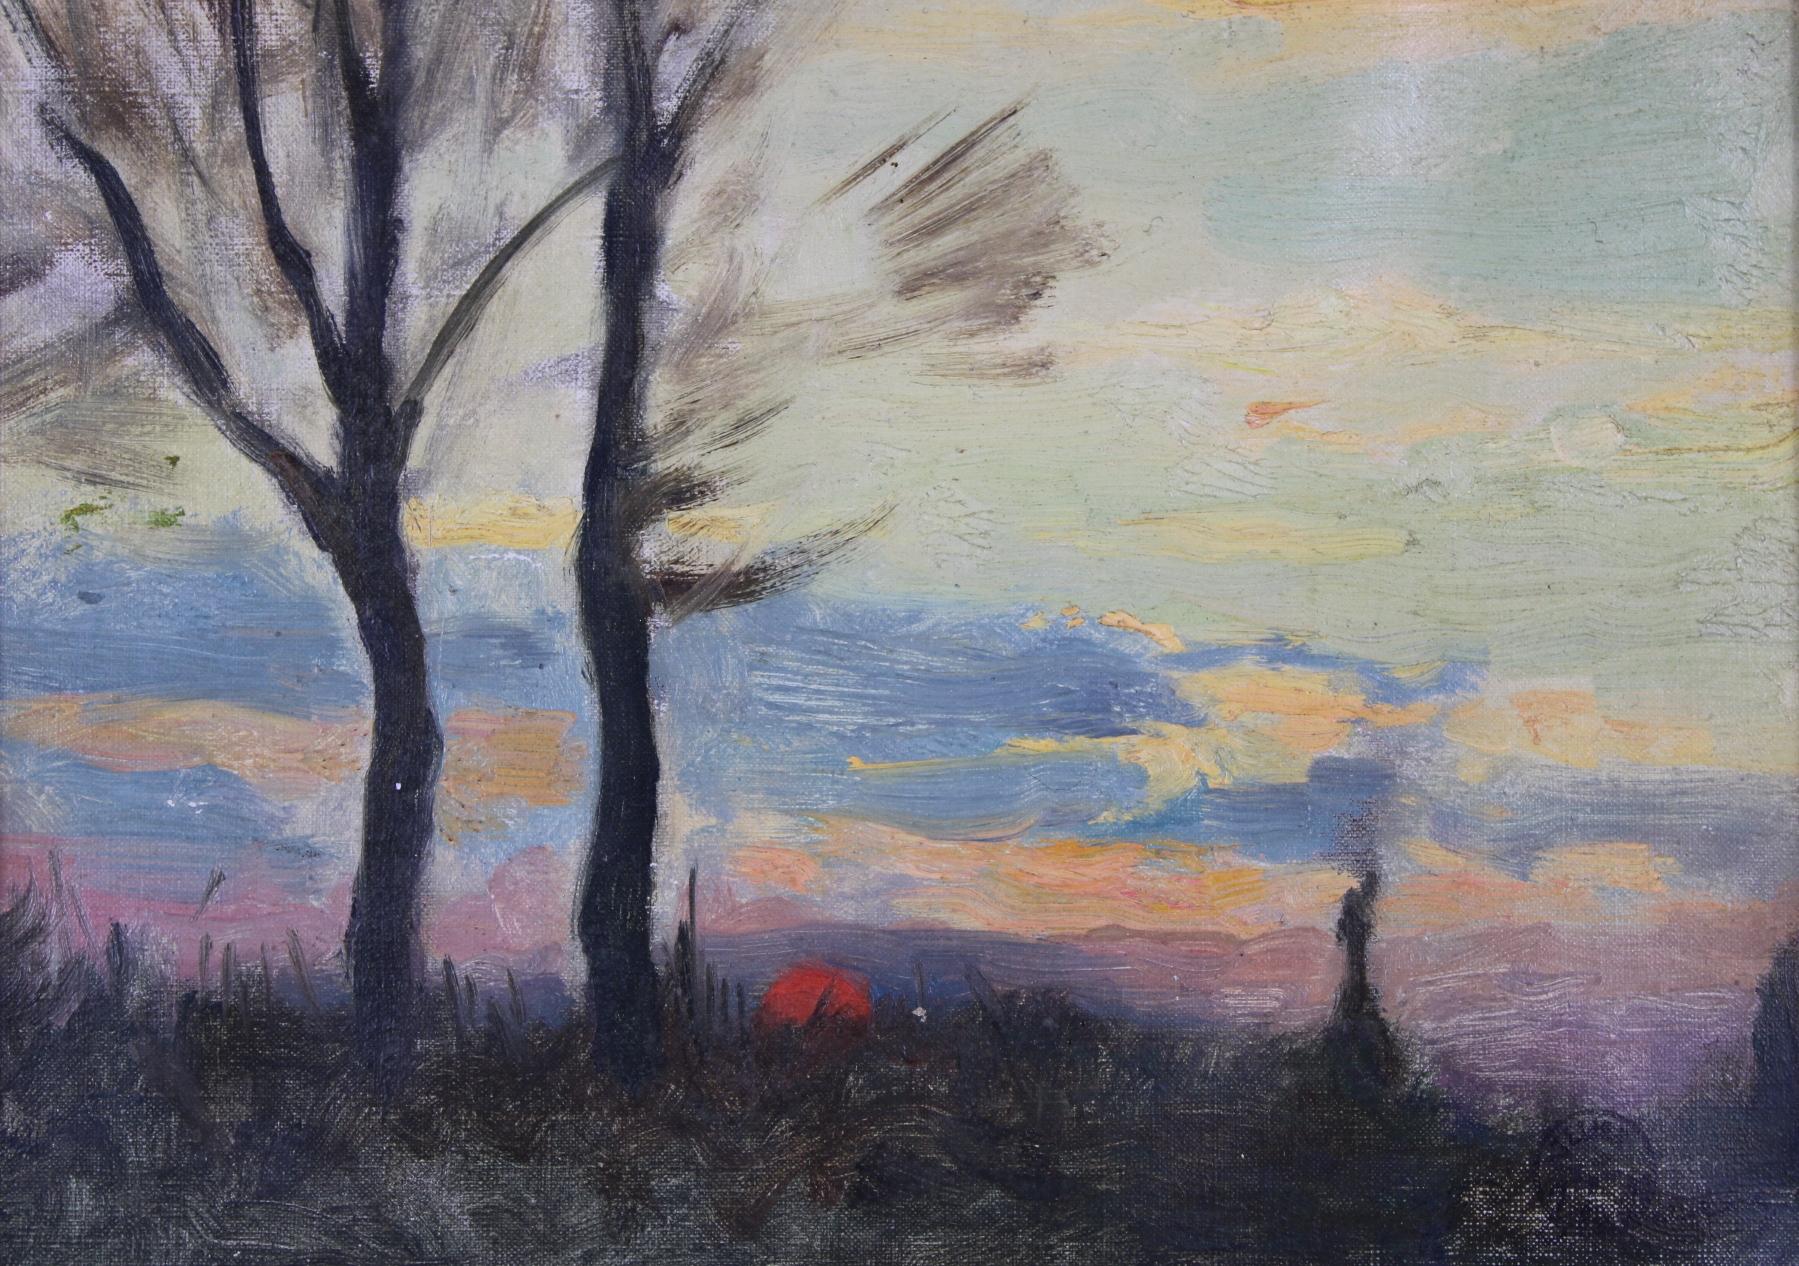 Sunset, Original Oil on Canvas, Impressionist Émile Louis Thivier (1858-1922) - Painting by Emile Louis Thivier